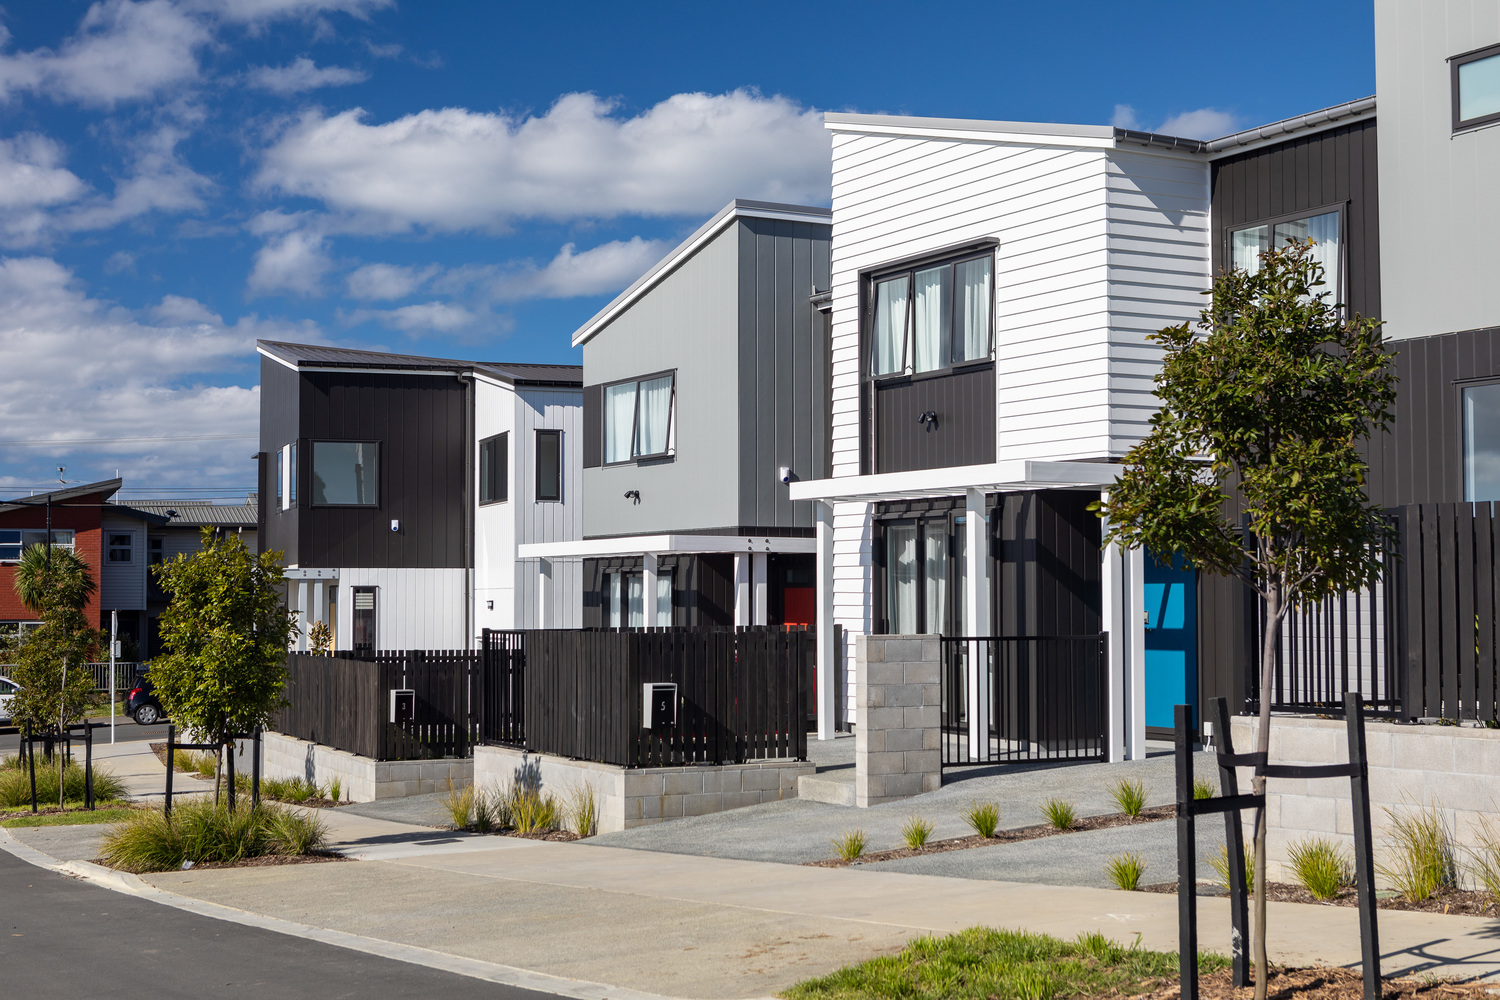 Universal Homes through the KiwiBuild scheme